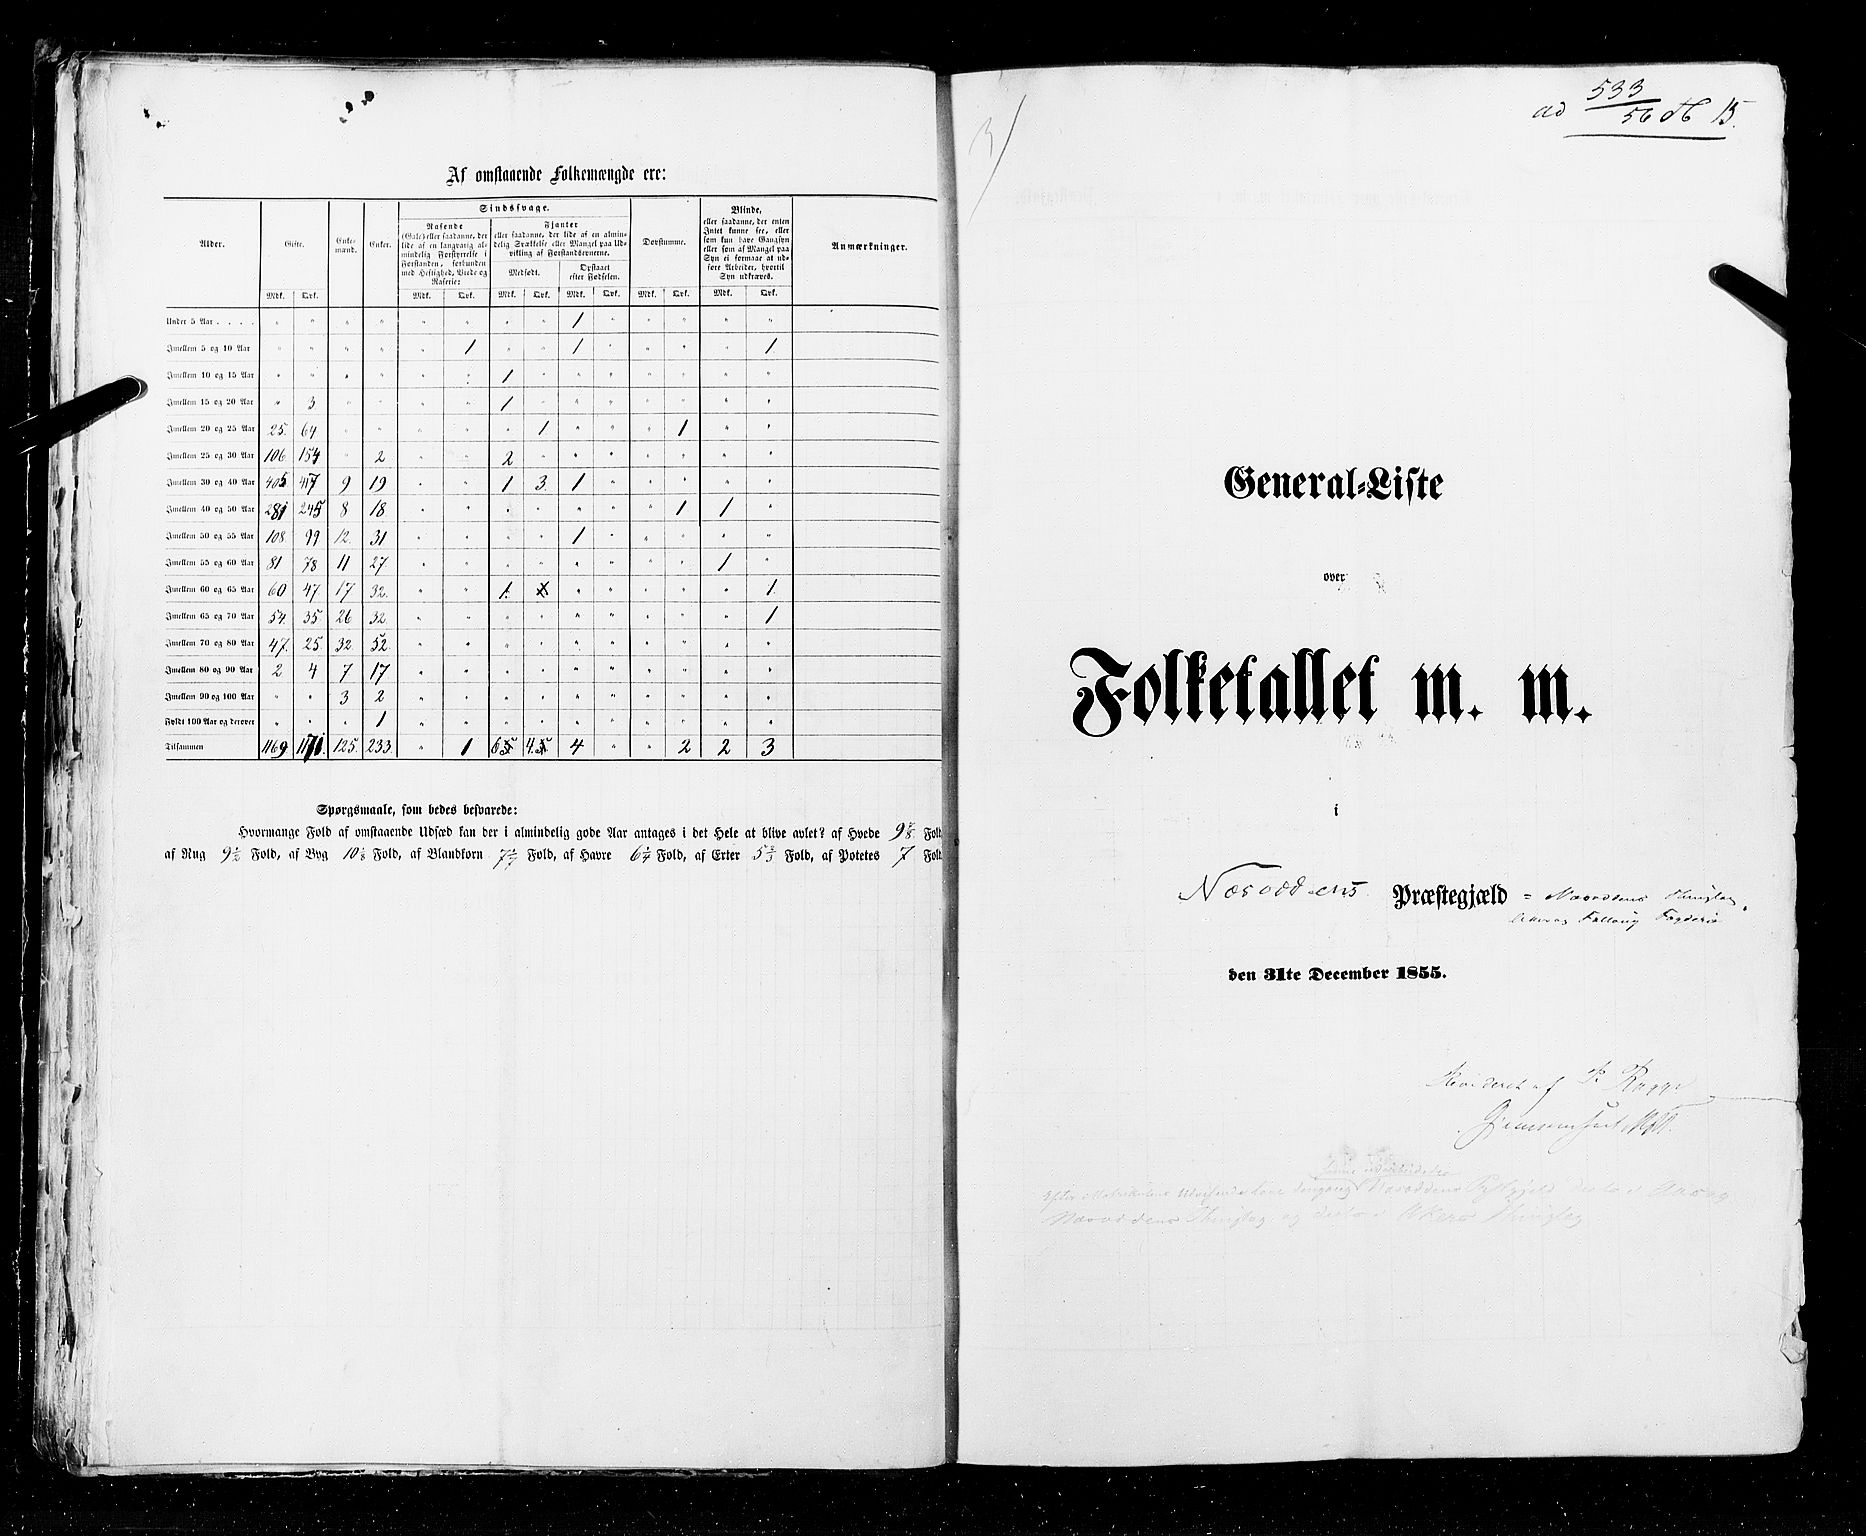 RA, Census 1855, vol. 1: Akershus amt, Smålenenes amt og Hedemarken amt, 1855, p. 15